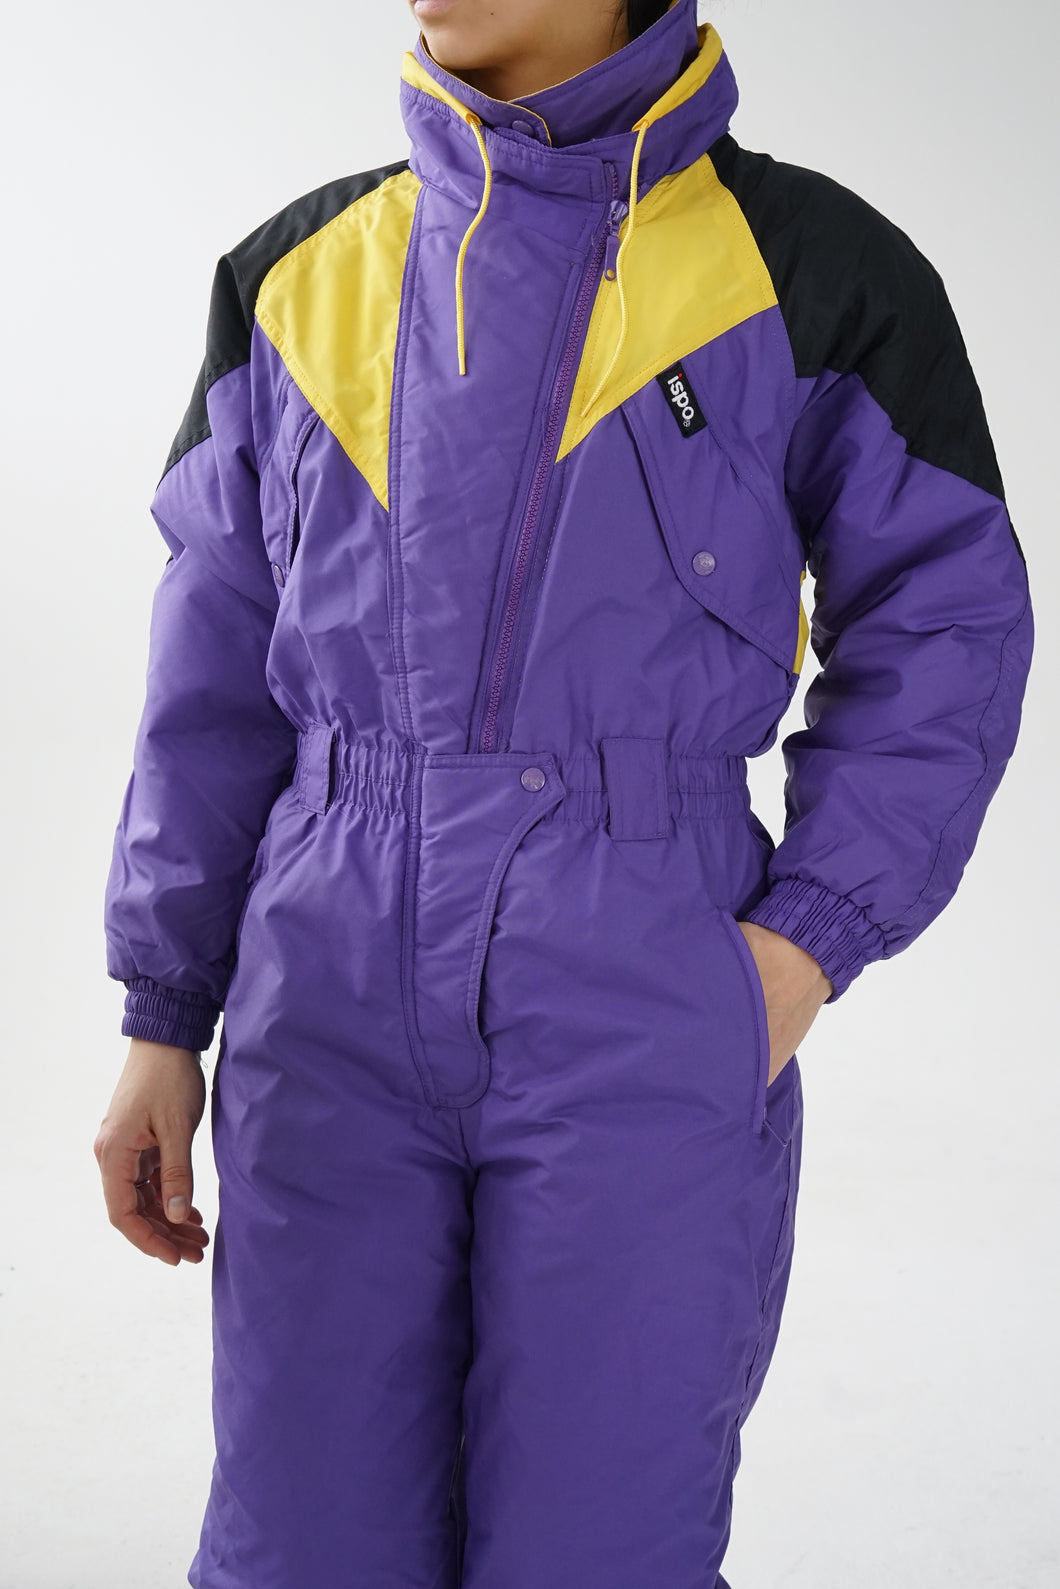 One piece ski suit vintage Ispo mauve et jaune pour homme taille S